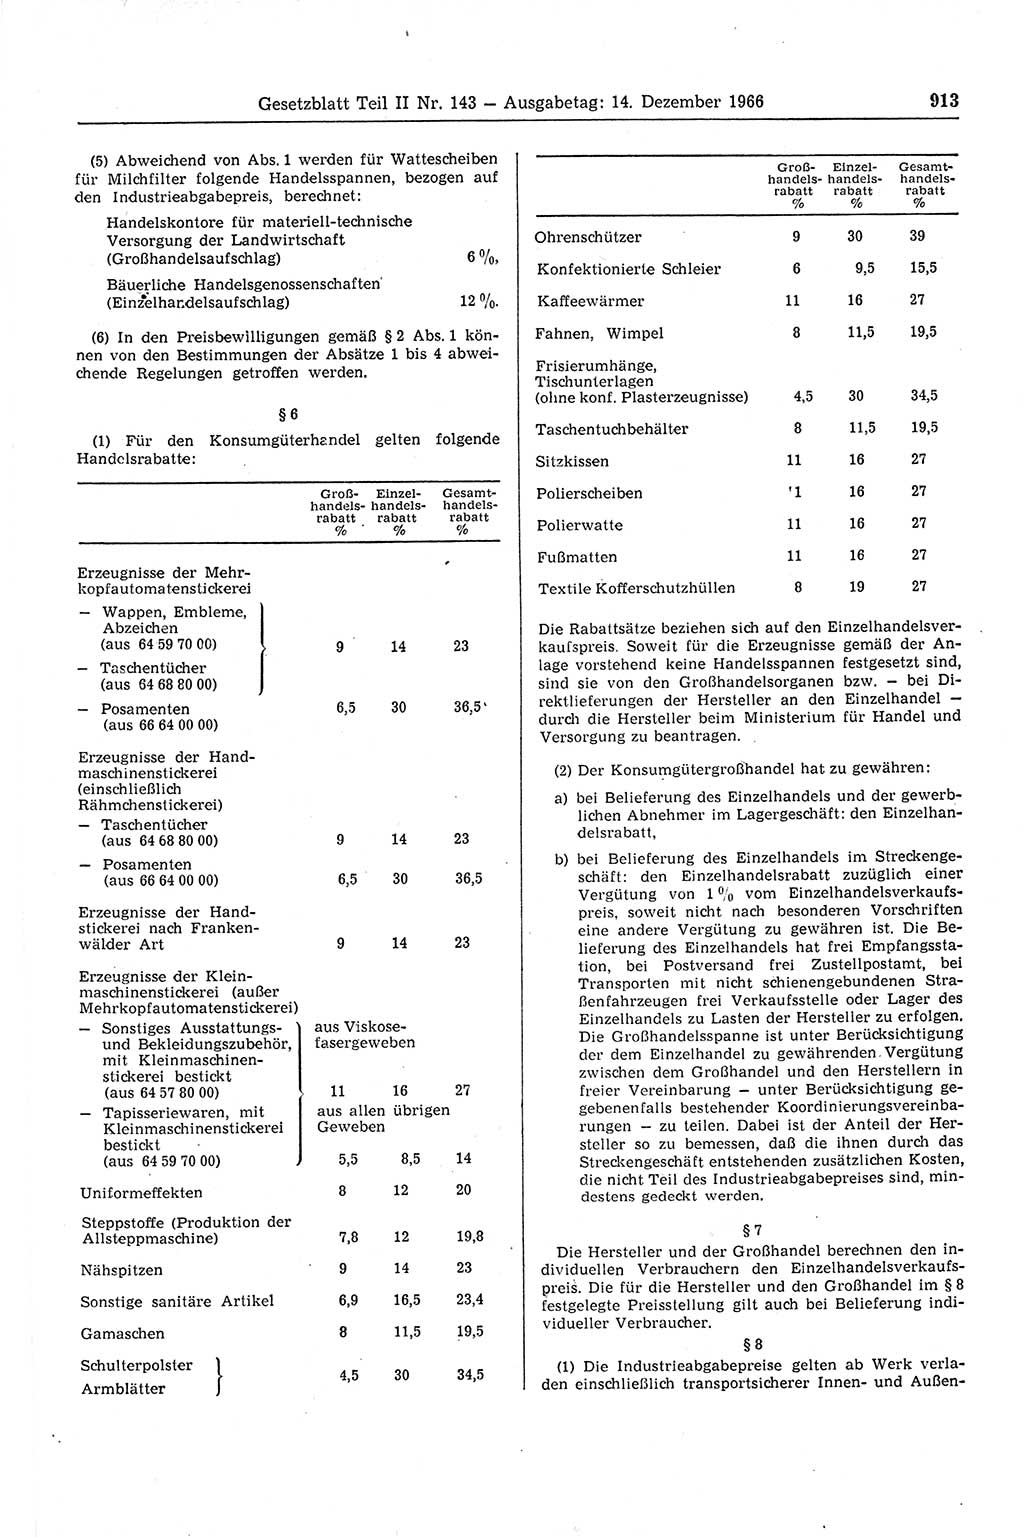 Gesetzblatt (GBl.) der Deutschen Demokratischen Republik (DDR) Teil ⅠⅠ 1966, Seite 913 (GBl. DDR ⅠⅠ 1966, S. 913)